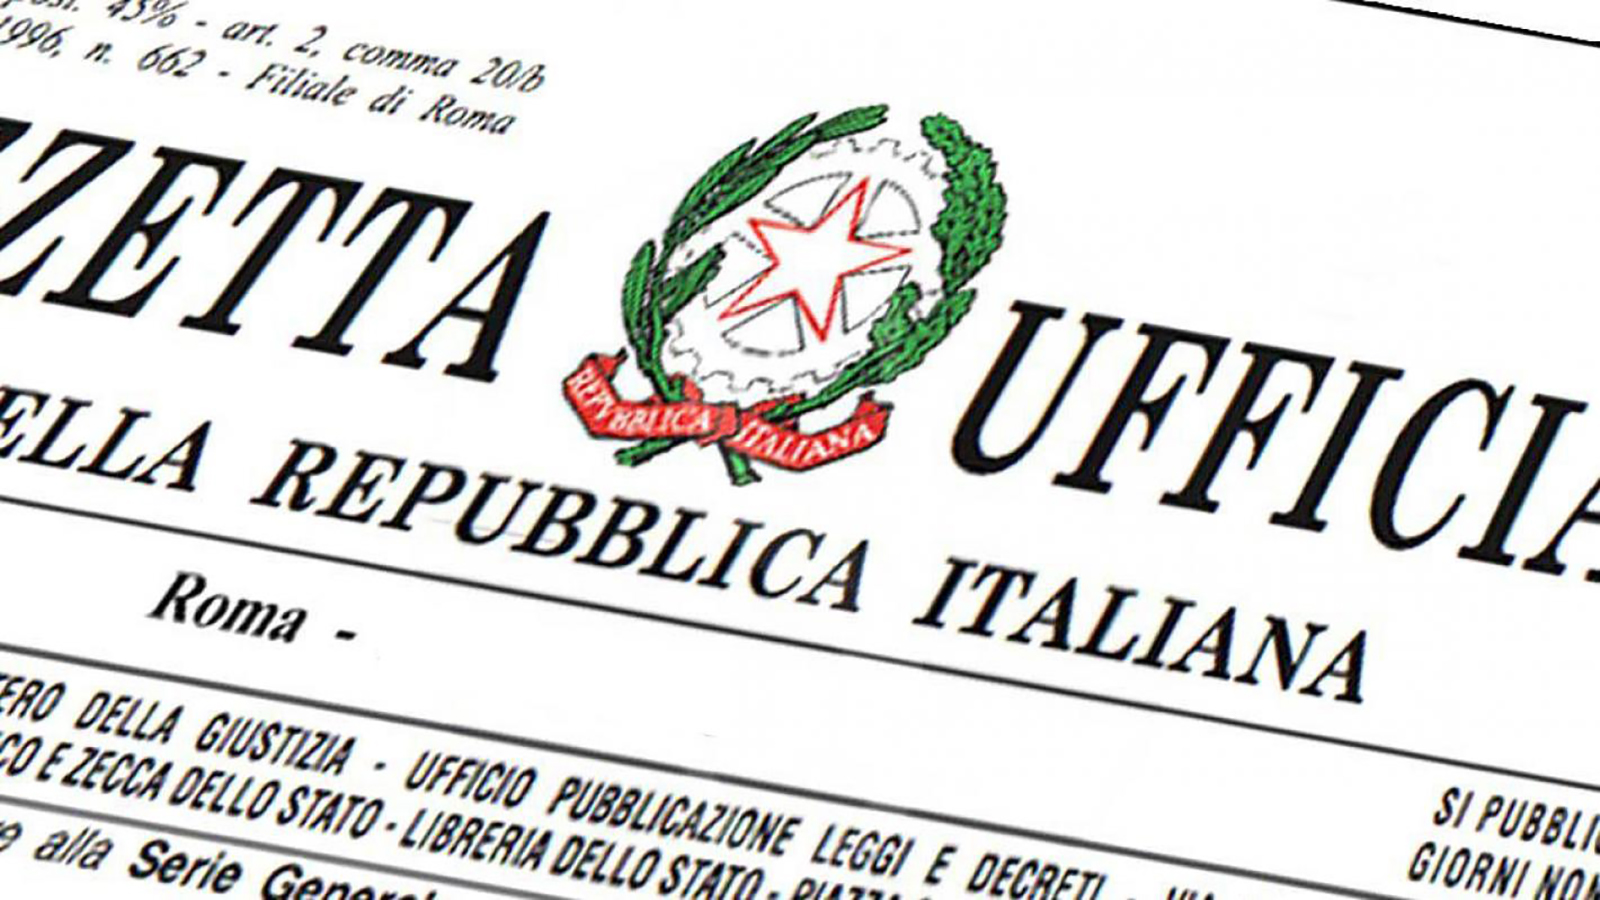 Collaboratori sportivi: informazioni sull'indennità di cui all'art. 96 del DL "Cura Italia"